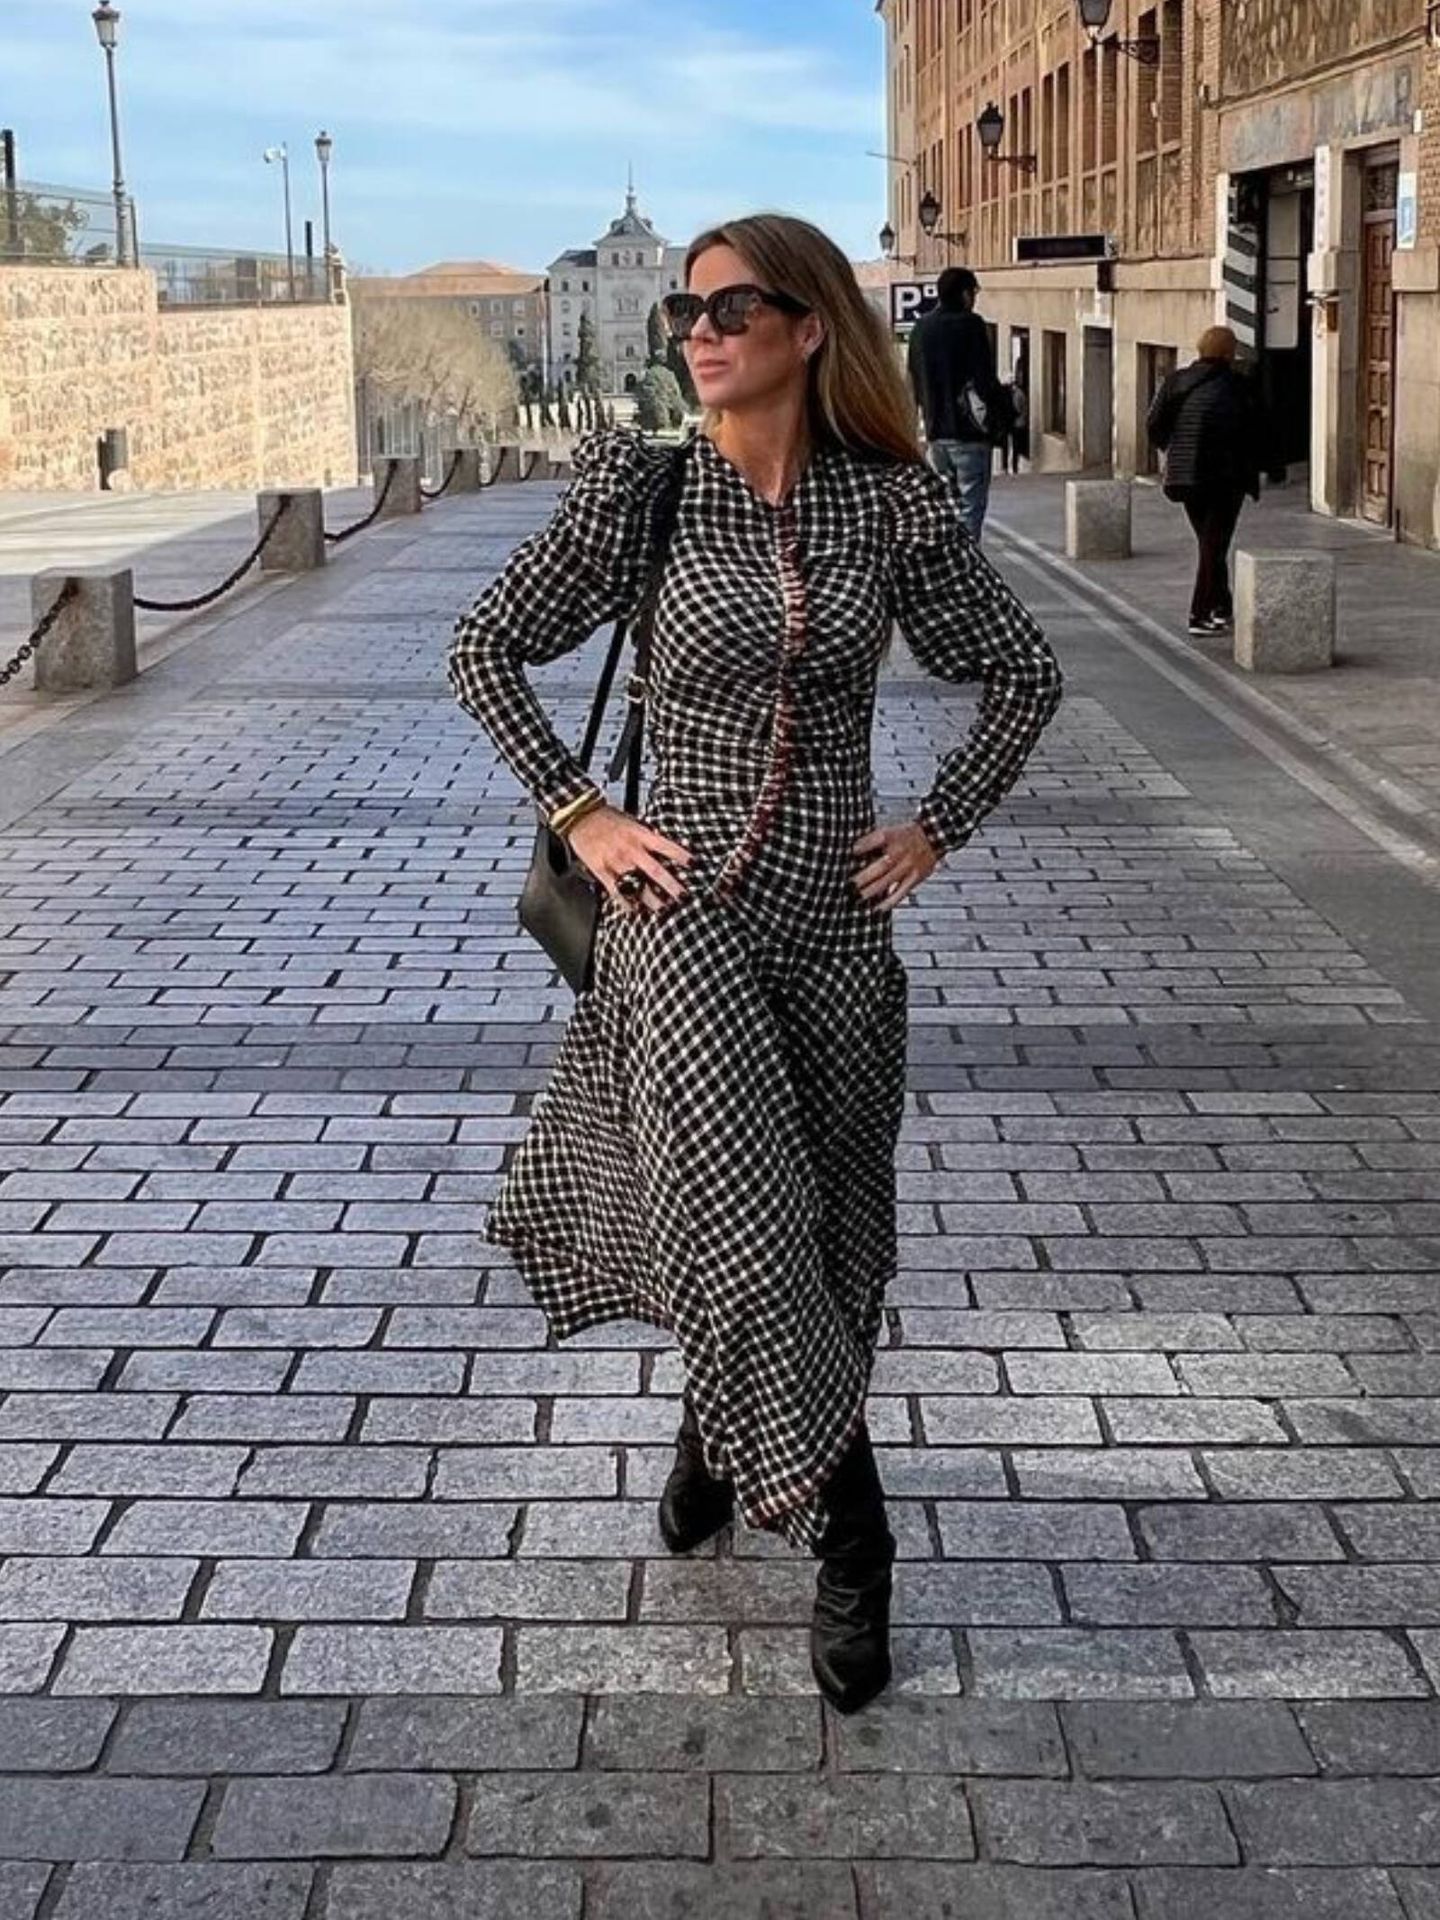 Amelia Bono paseando por las calles de Toledo con un nuevo look. (Instagram/@ameliabono)